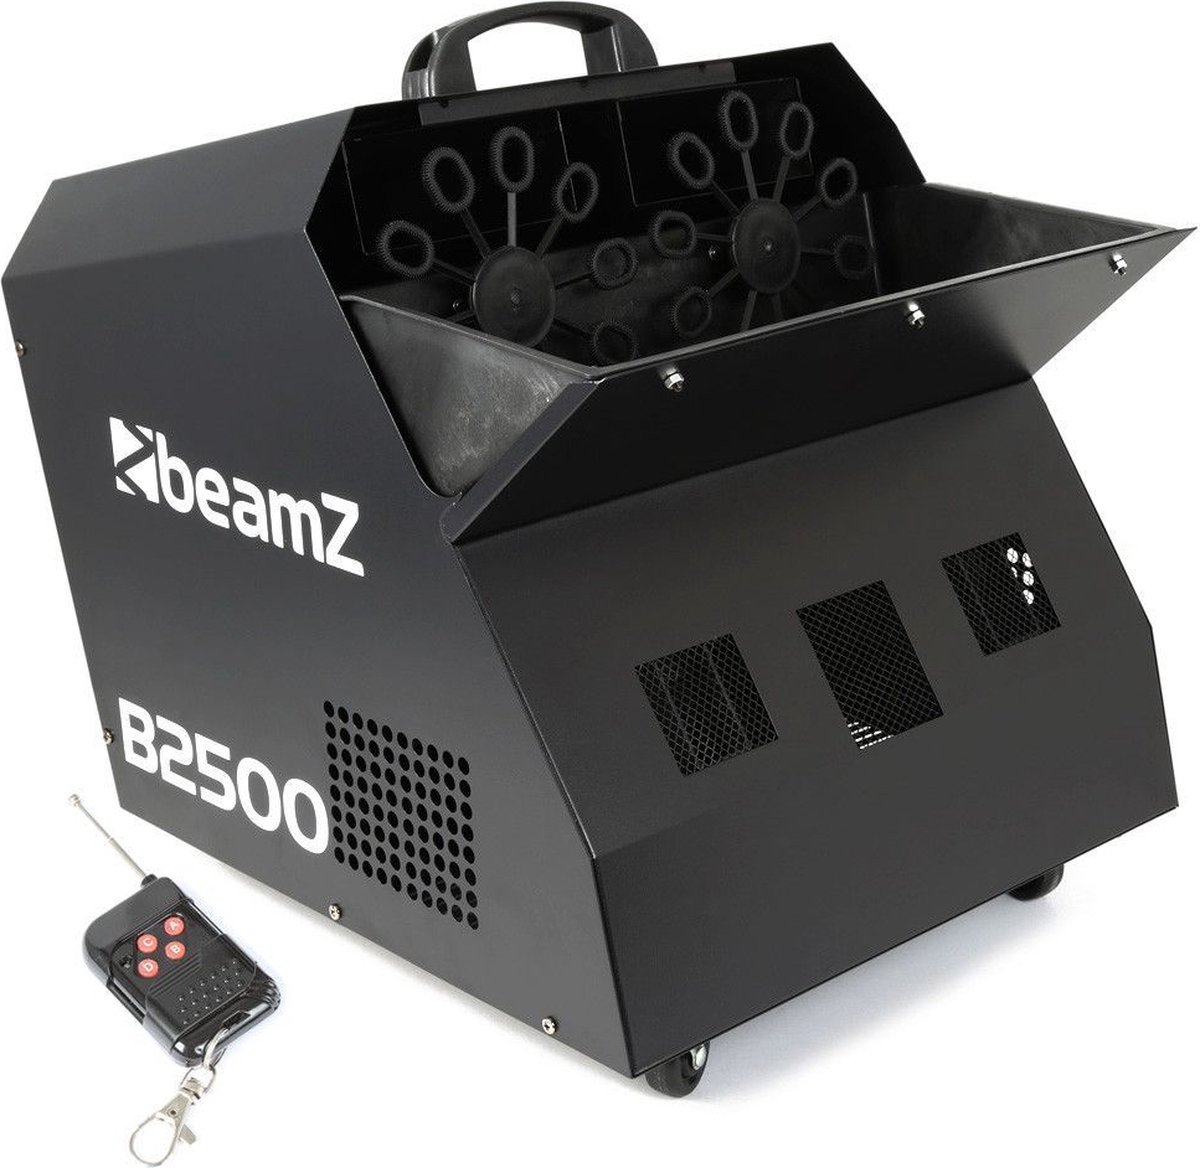 Bellenblaasmachine - Beamz B2500 professionele dubbele bellenblaasmachine met draadloze afstandsbediening - BeamZ